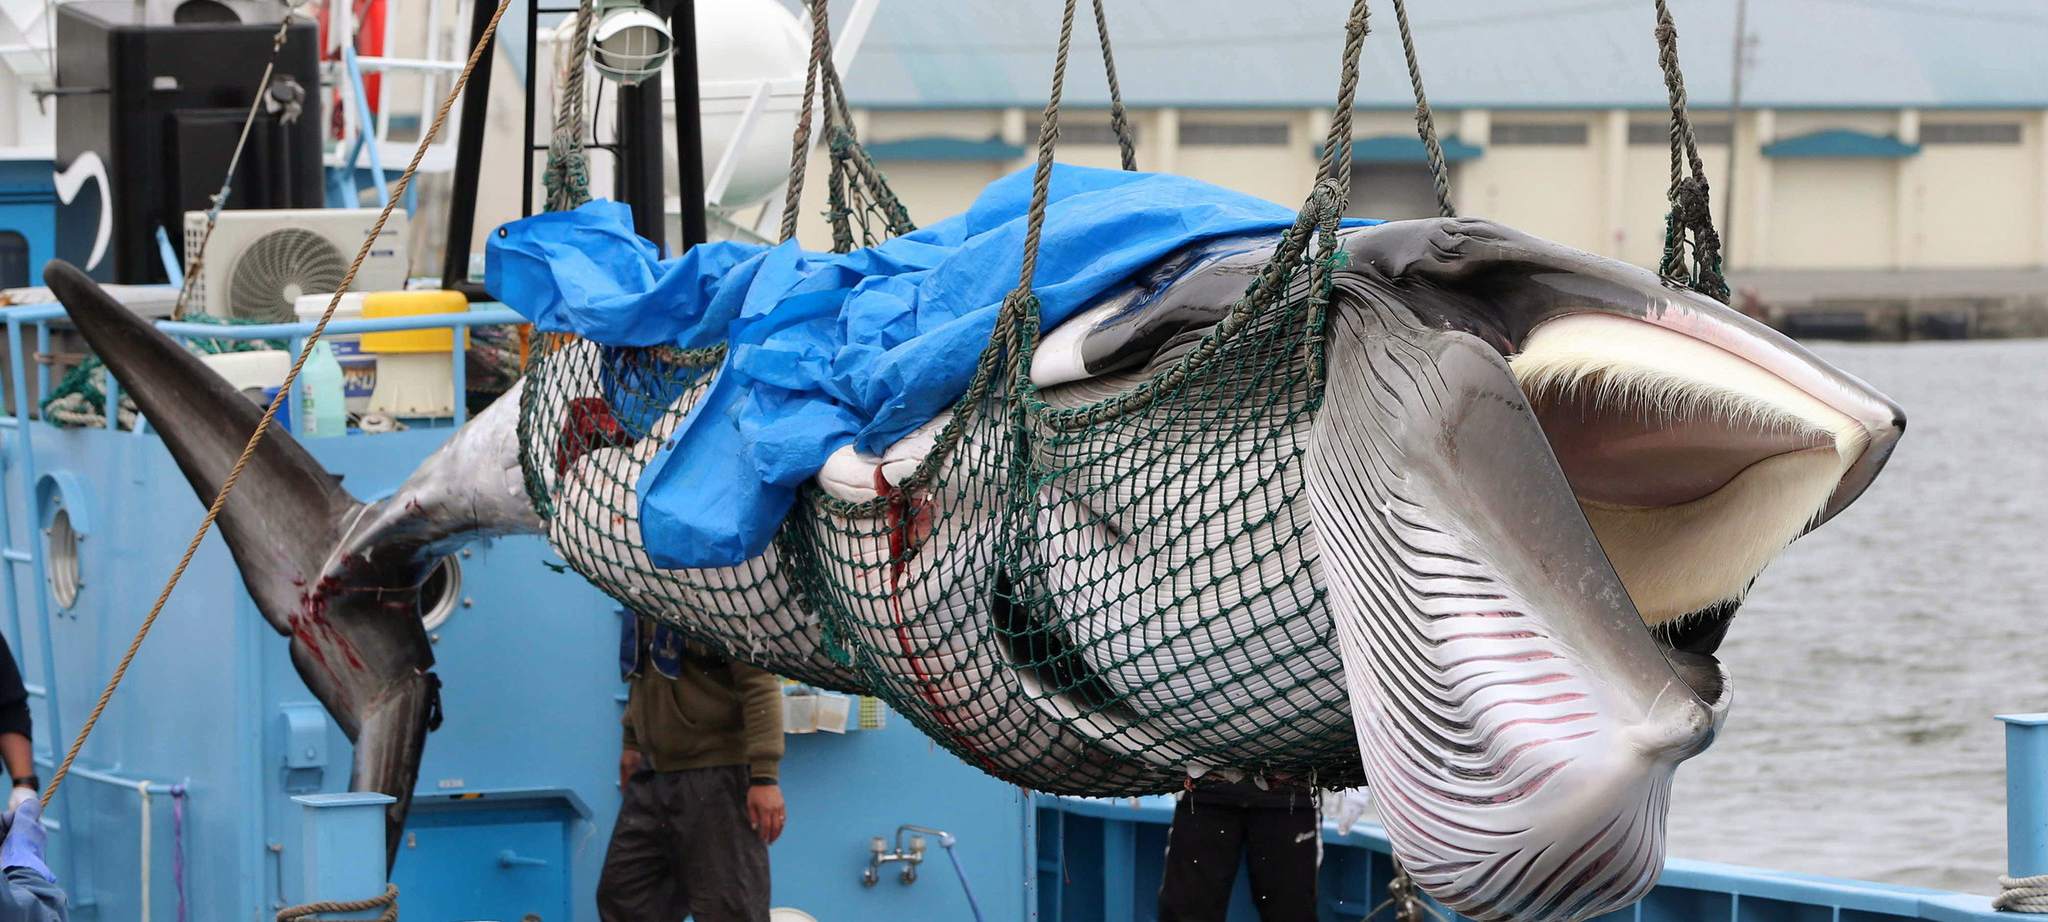 日本重启商业捕鲸 捕鲸船捕获小须鲸带回码头jpg